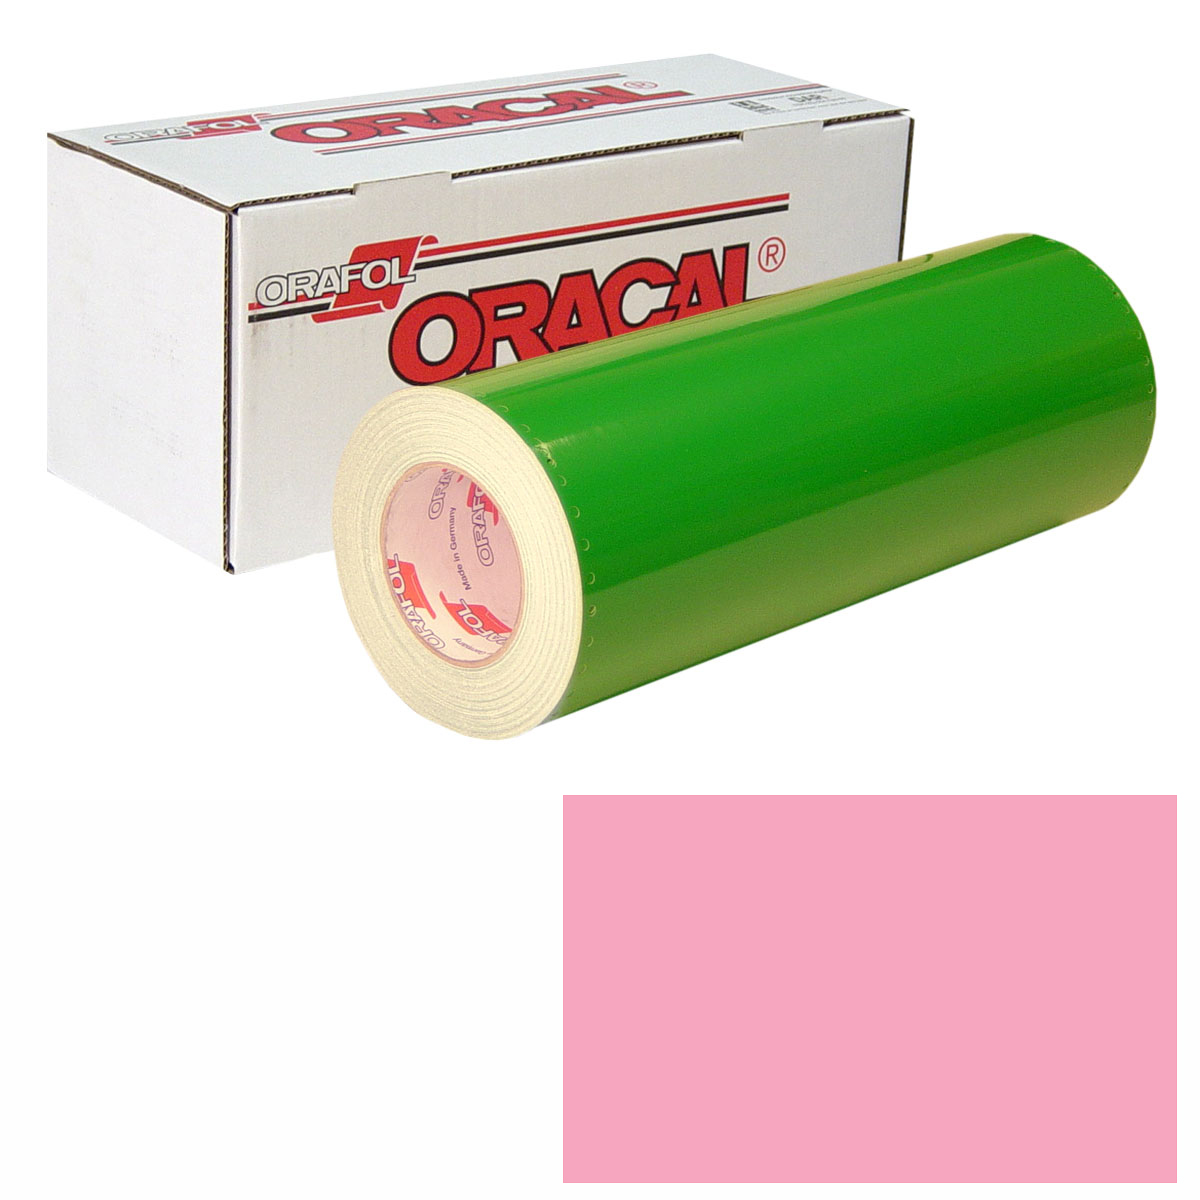 ORACAL 651 Unp 48in X 10yd 045 Soft Pink